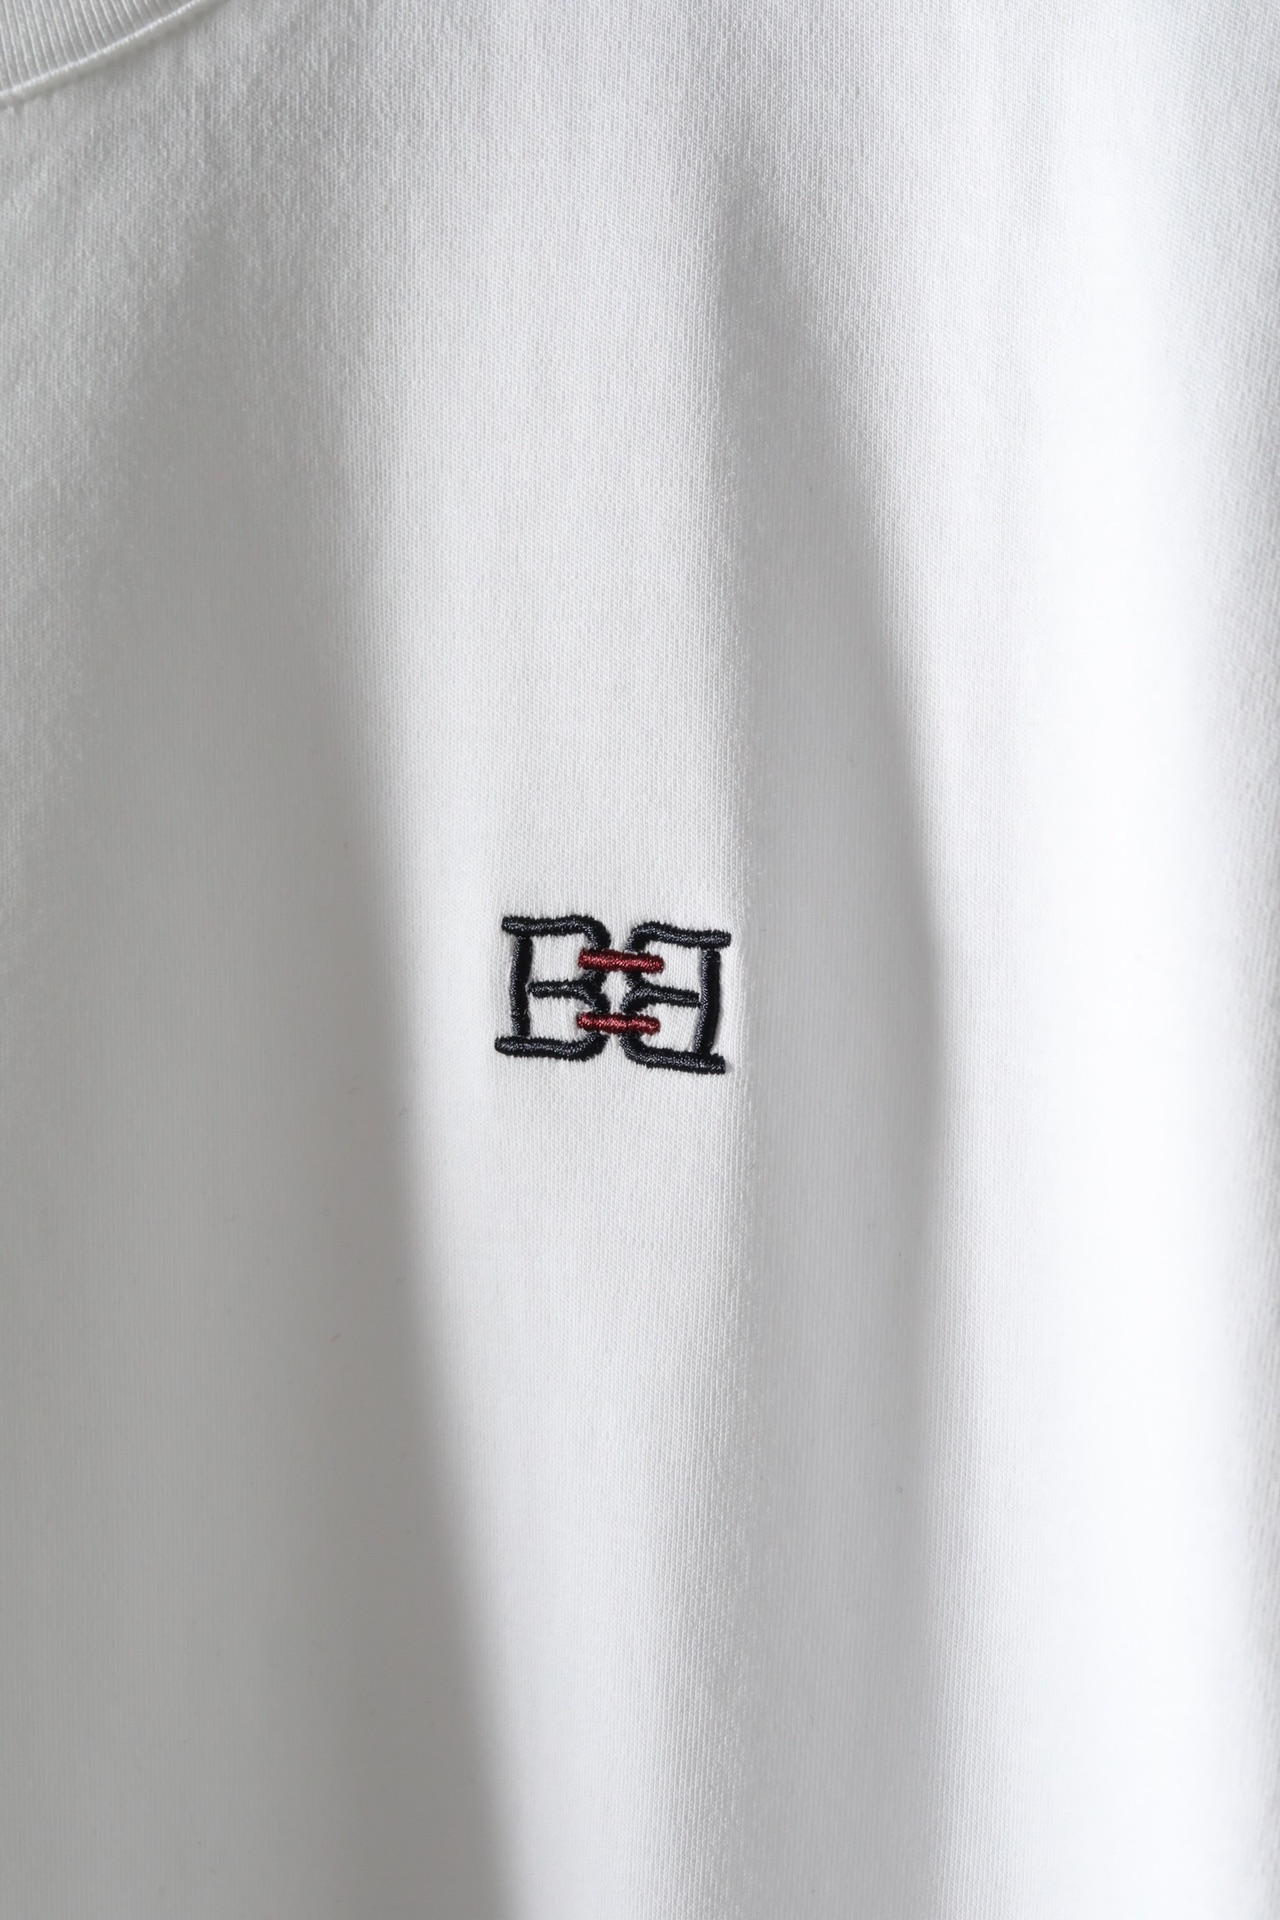 补单热款#2024BA*LY绣花短袖T恤#采用当下最时髦阔肩版型细节处理透露着艺术设计感在经典版型的T恤